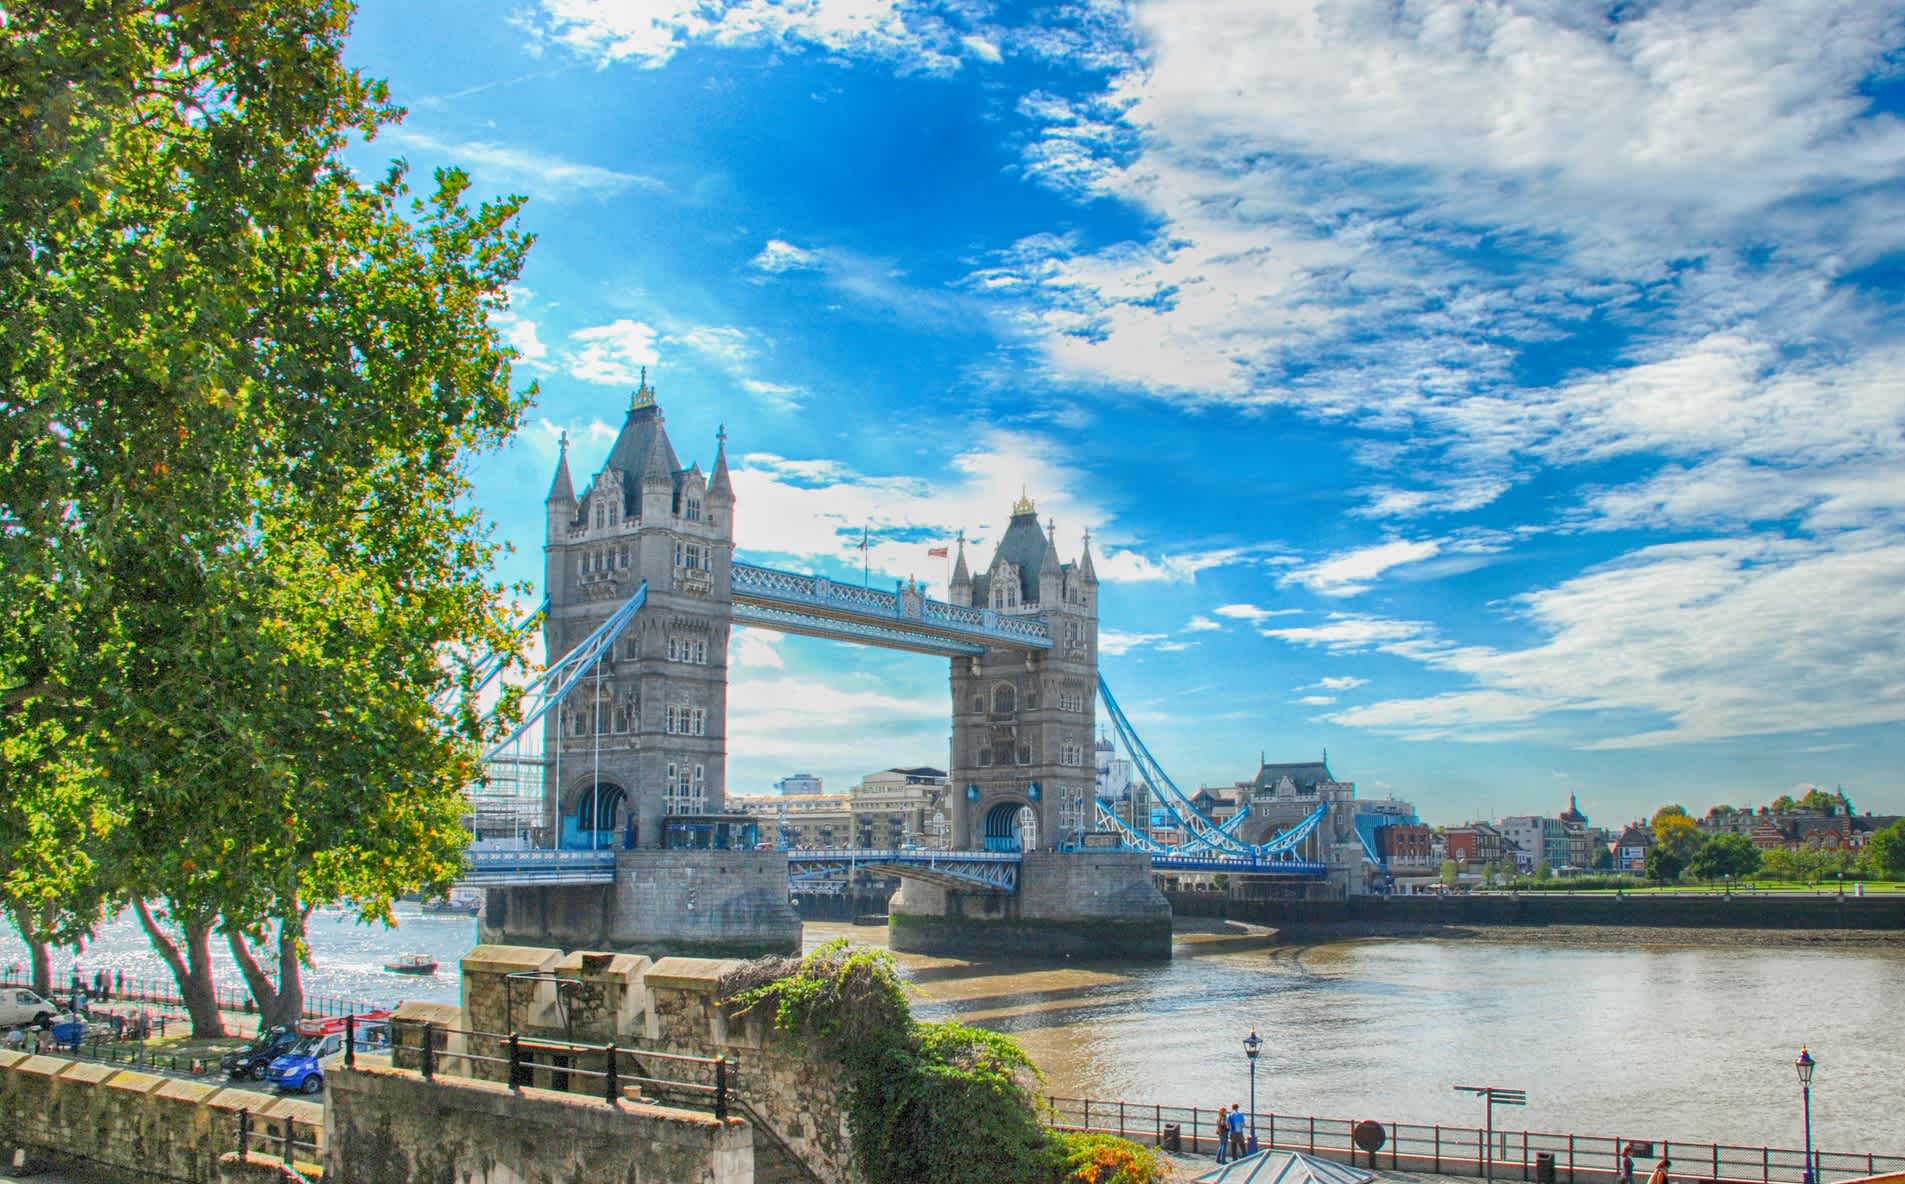 Tower Bridge en été, Londres, Angleterre, Grande-Bretagne.

